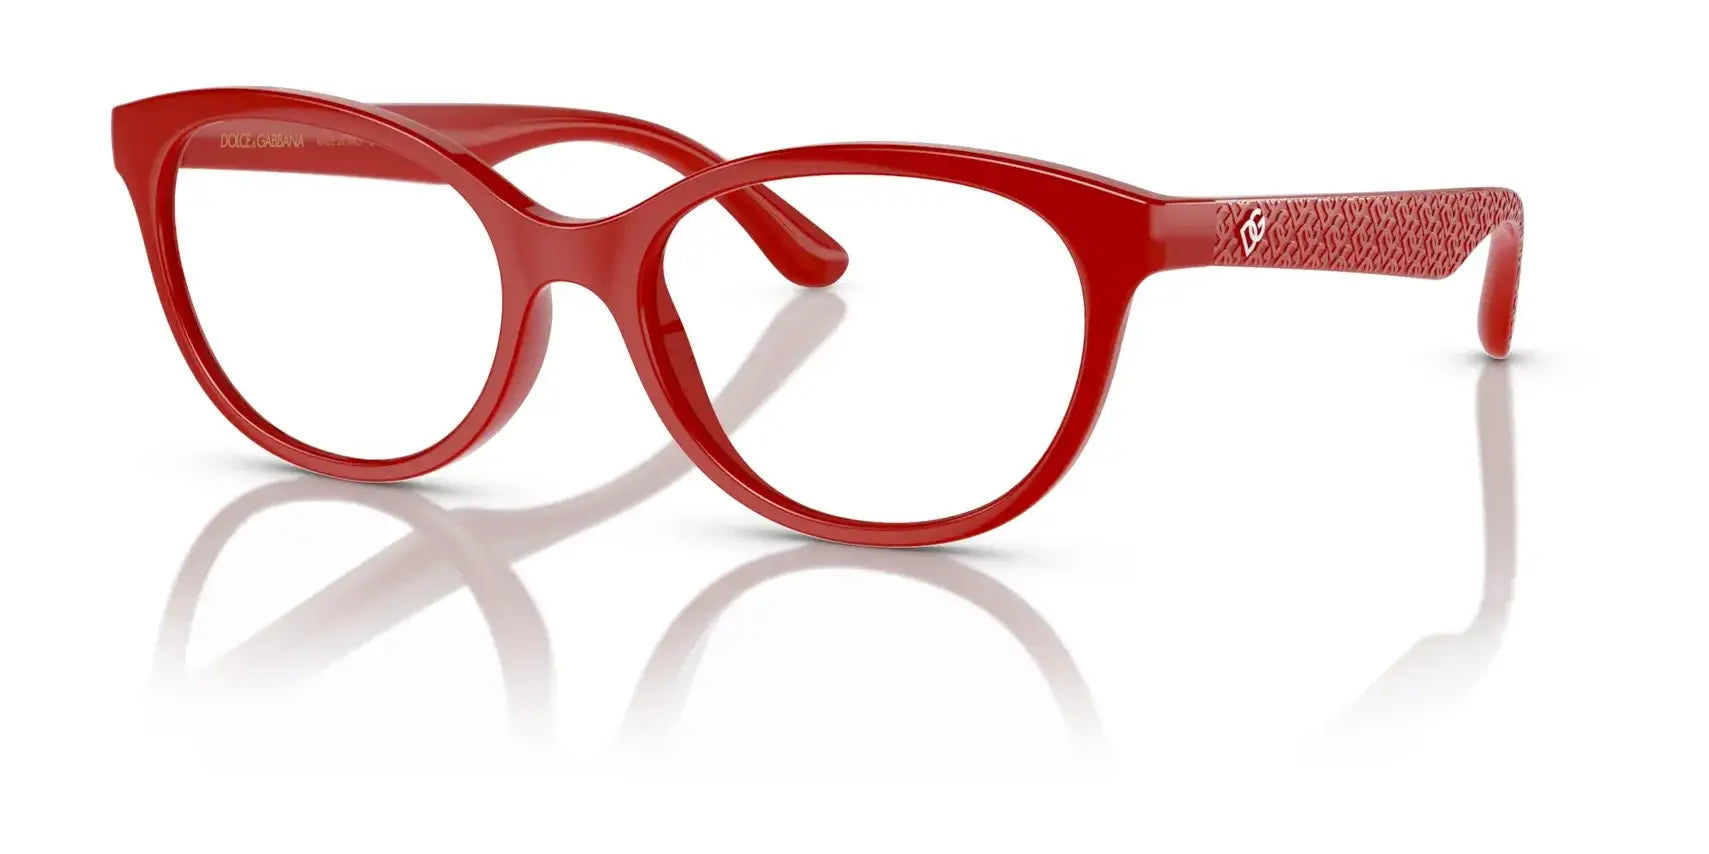 Dolce&Gabbana DX5096 Eyeglasses Cherry